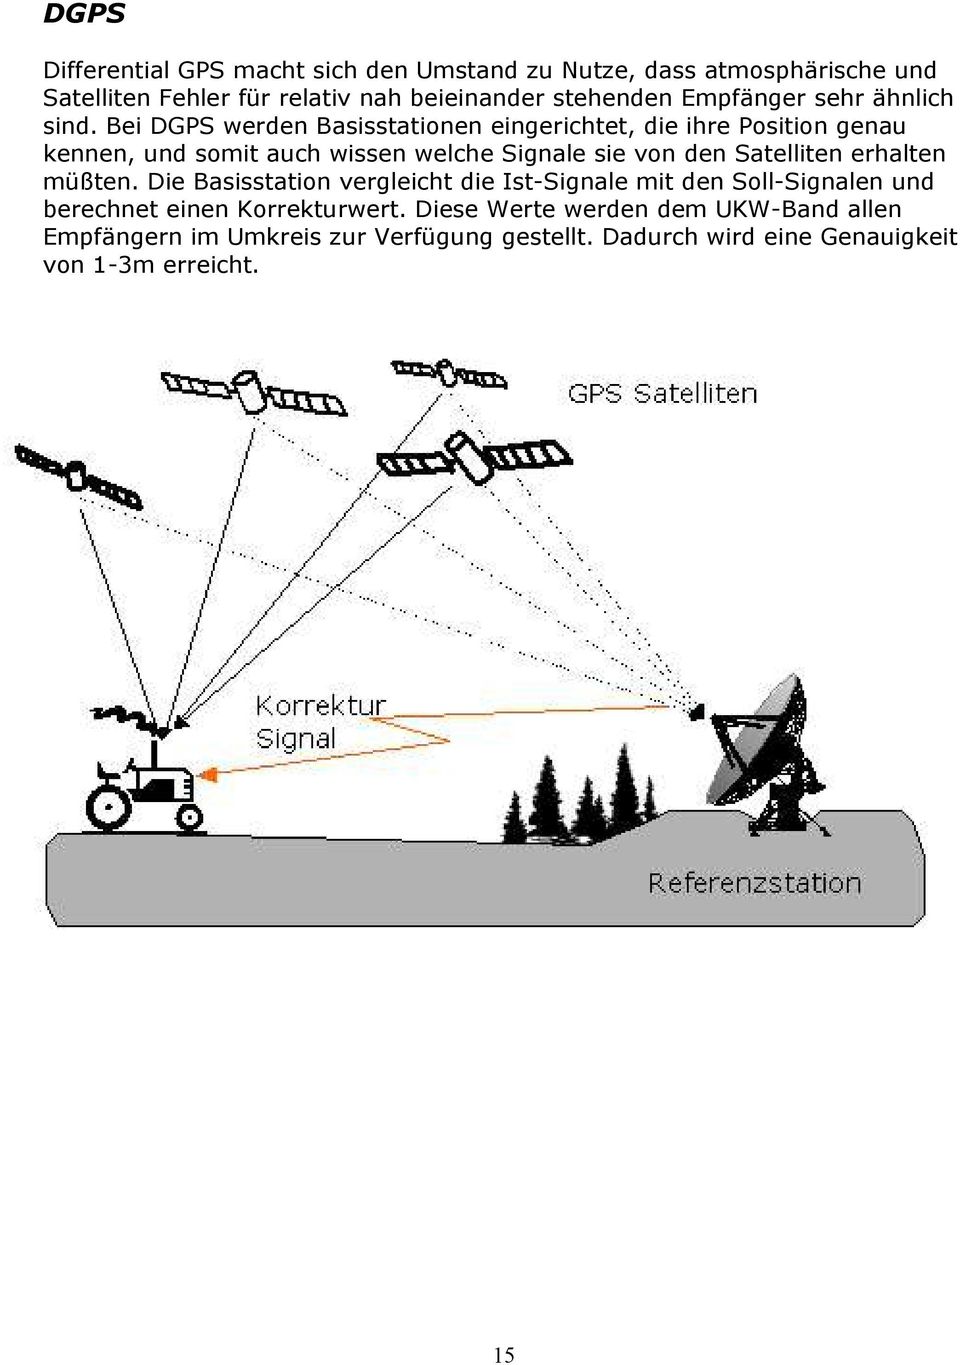 Bei DGPS werden Basisstationen eingerichtet, die ihre Position genau kennen, und somit auch wissen welche Signale sie von den Satelliten